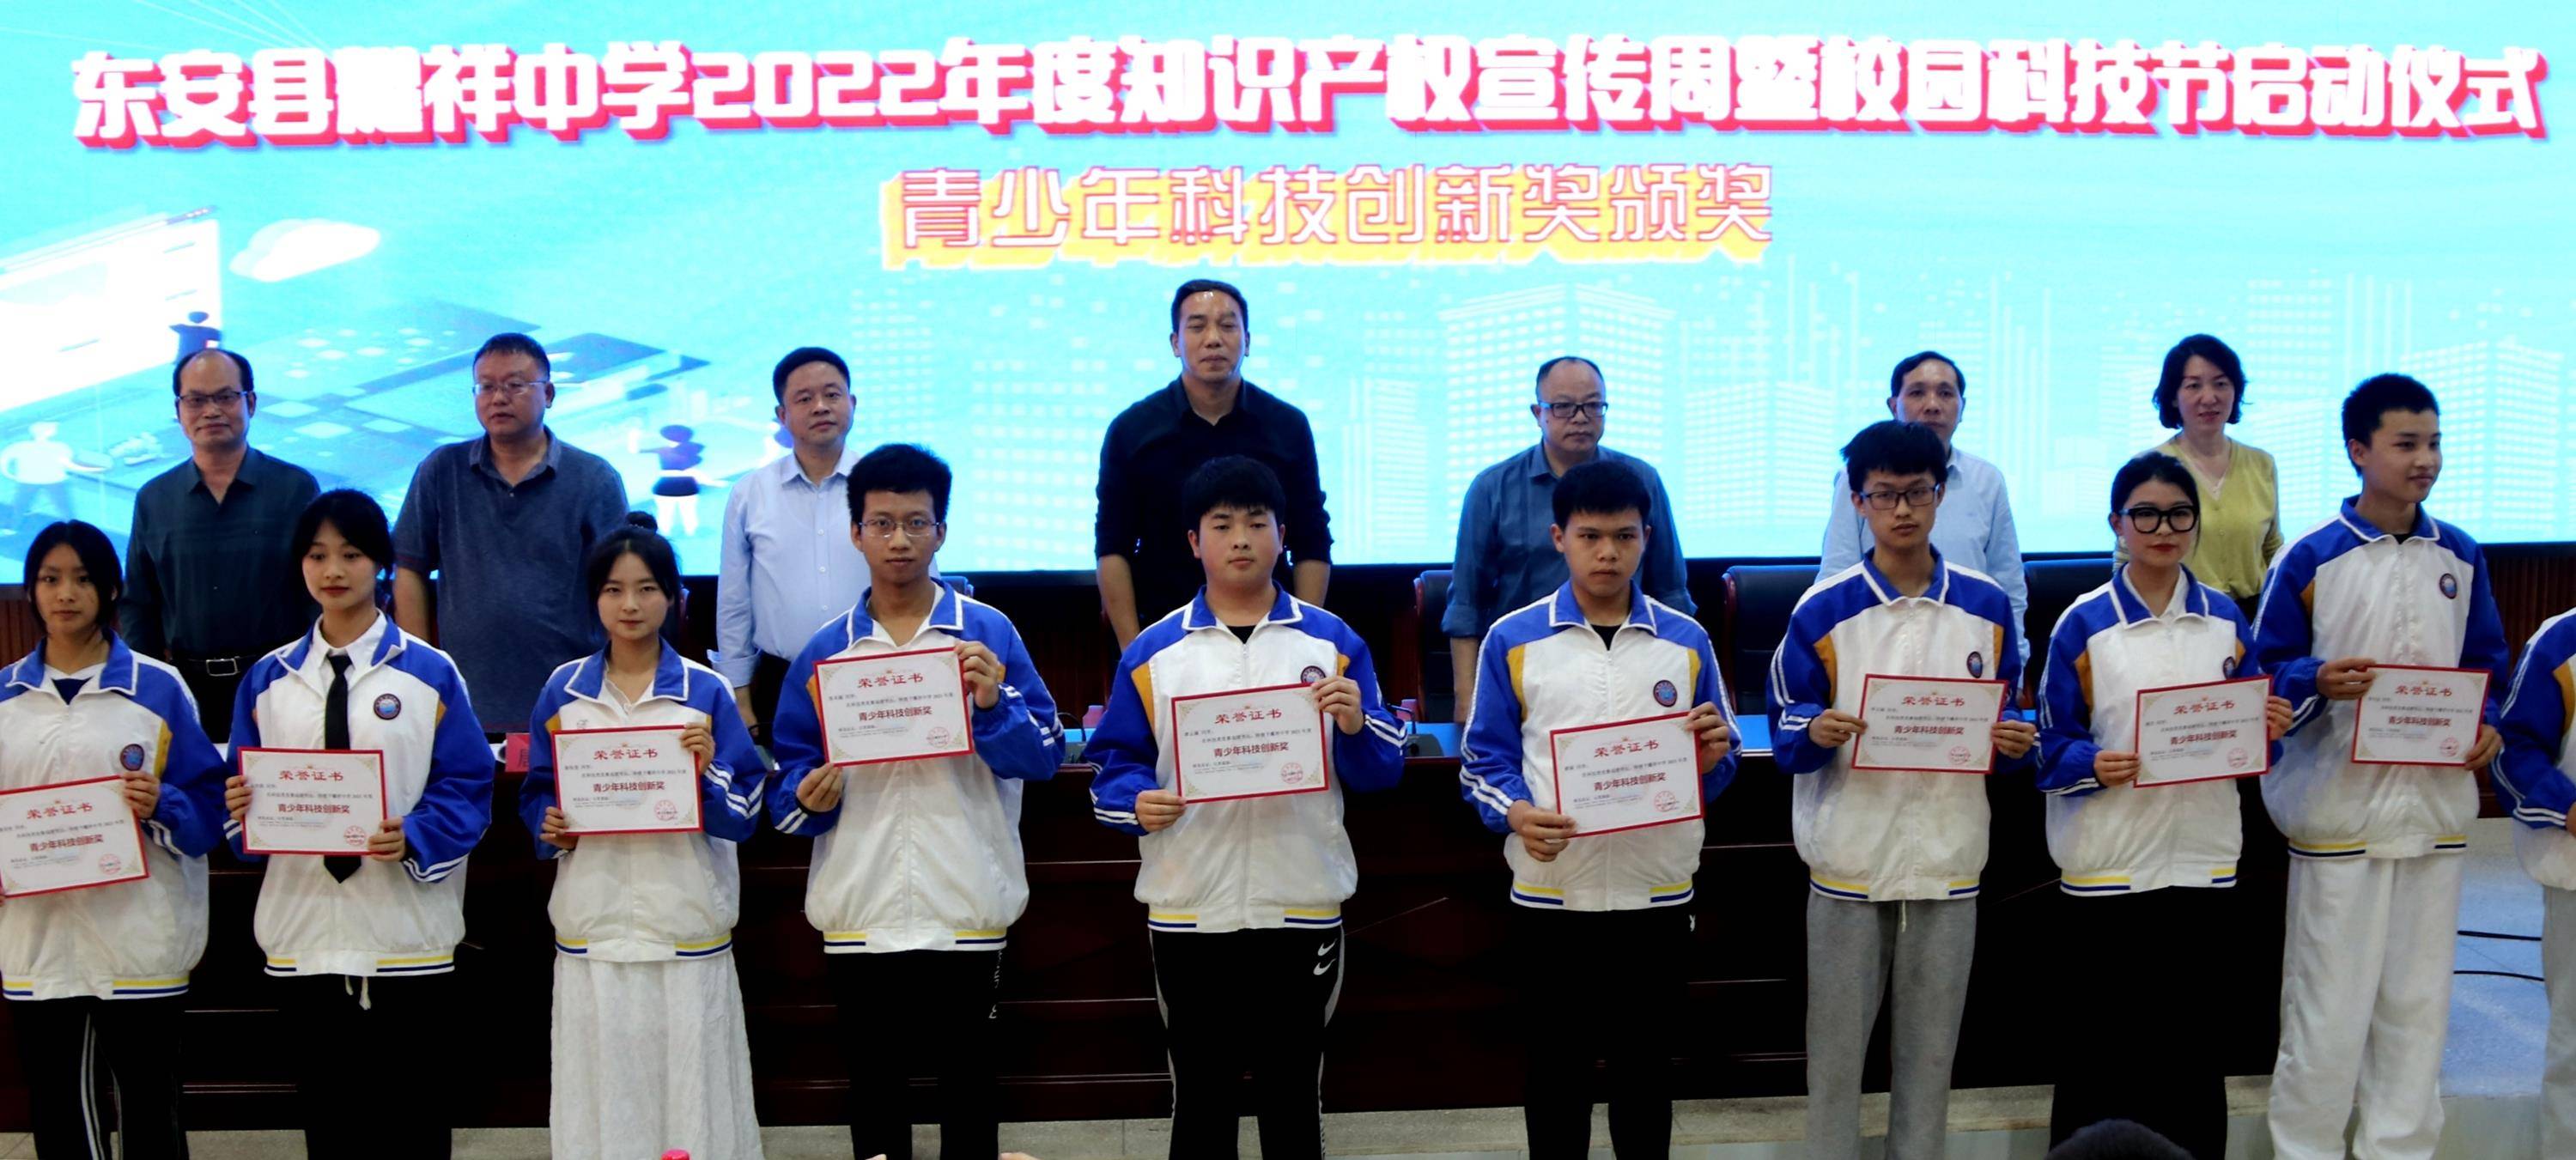 双减在行动!东安县耀祥中学举办2022年校园科技节